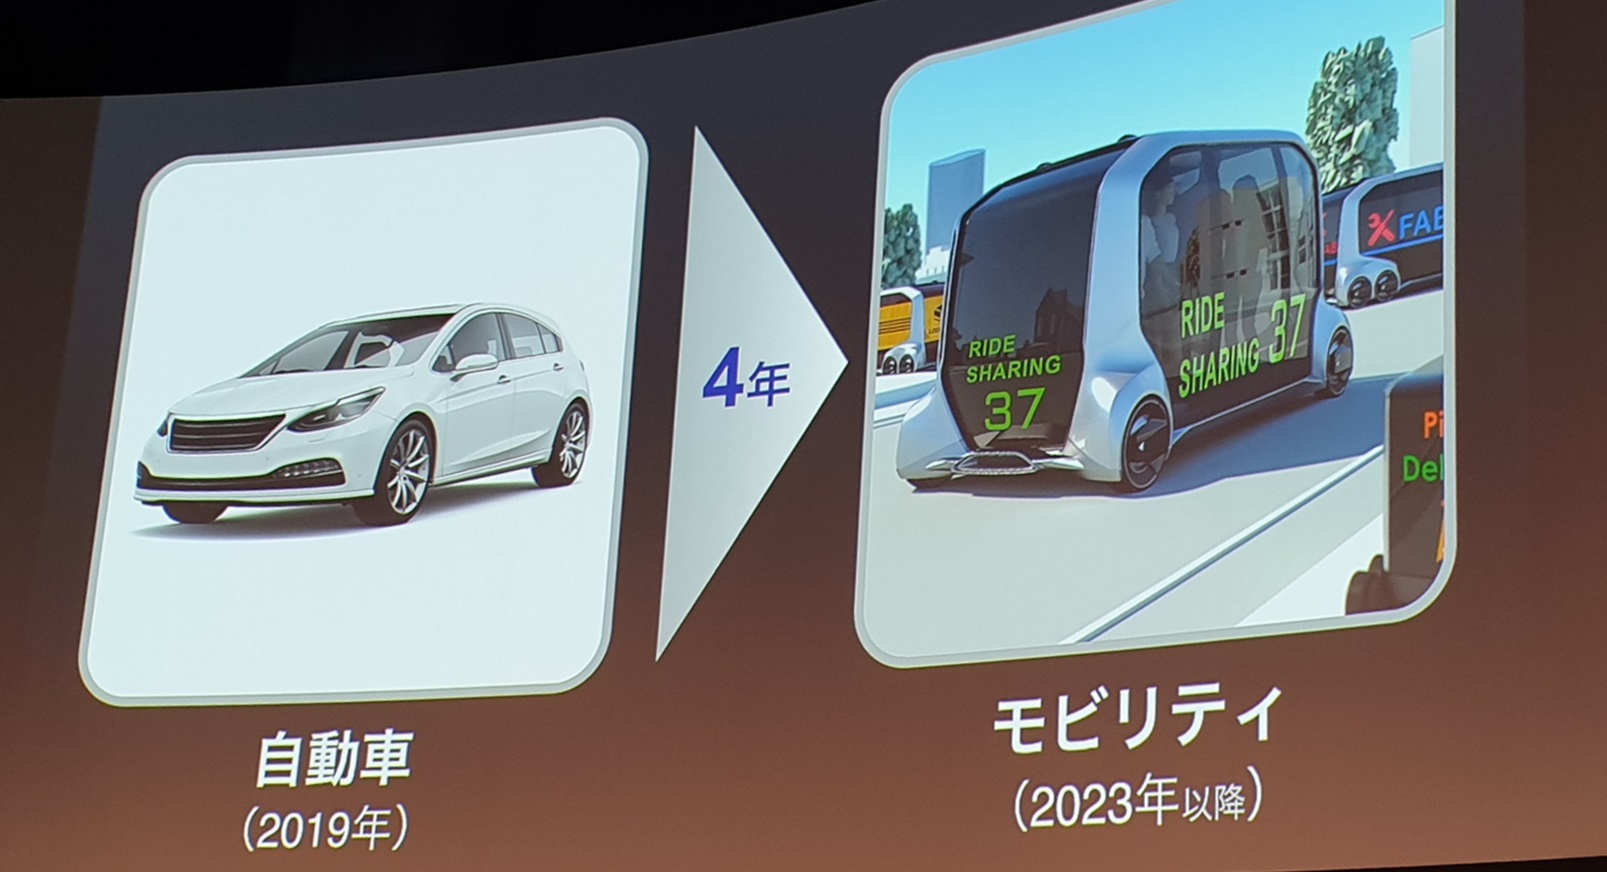 모네(MONET)는 2023년에 공유 자율주행차(오른쪽 그림) 서비스를 시행할 계획이다. <사진=대덕넷>